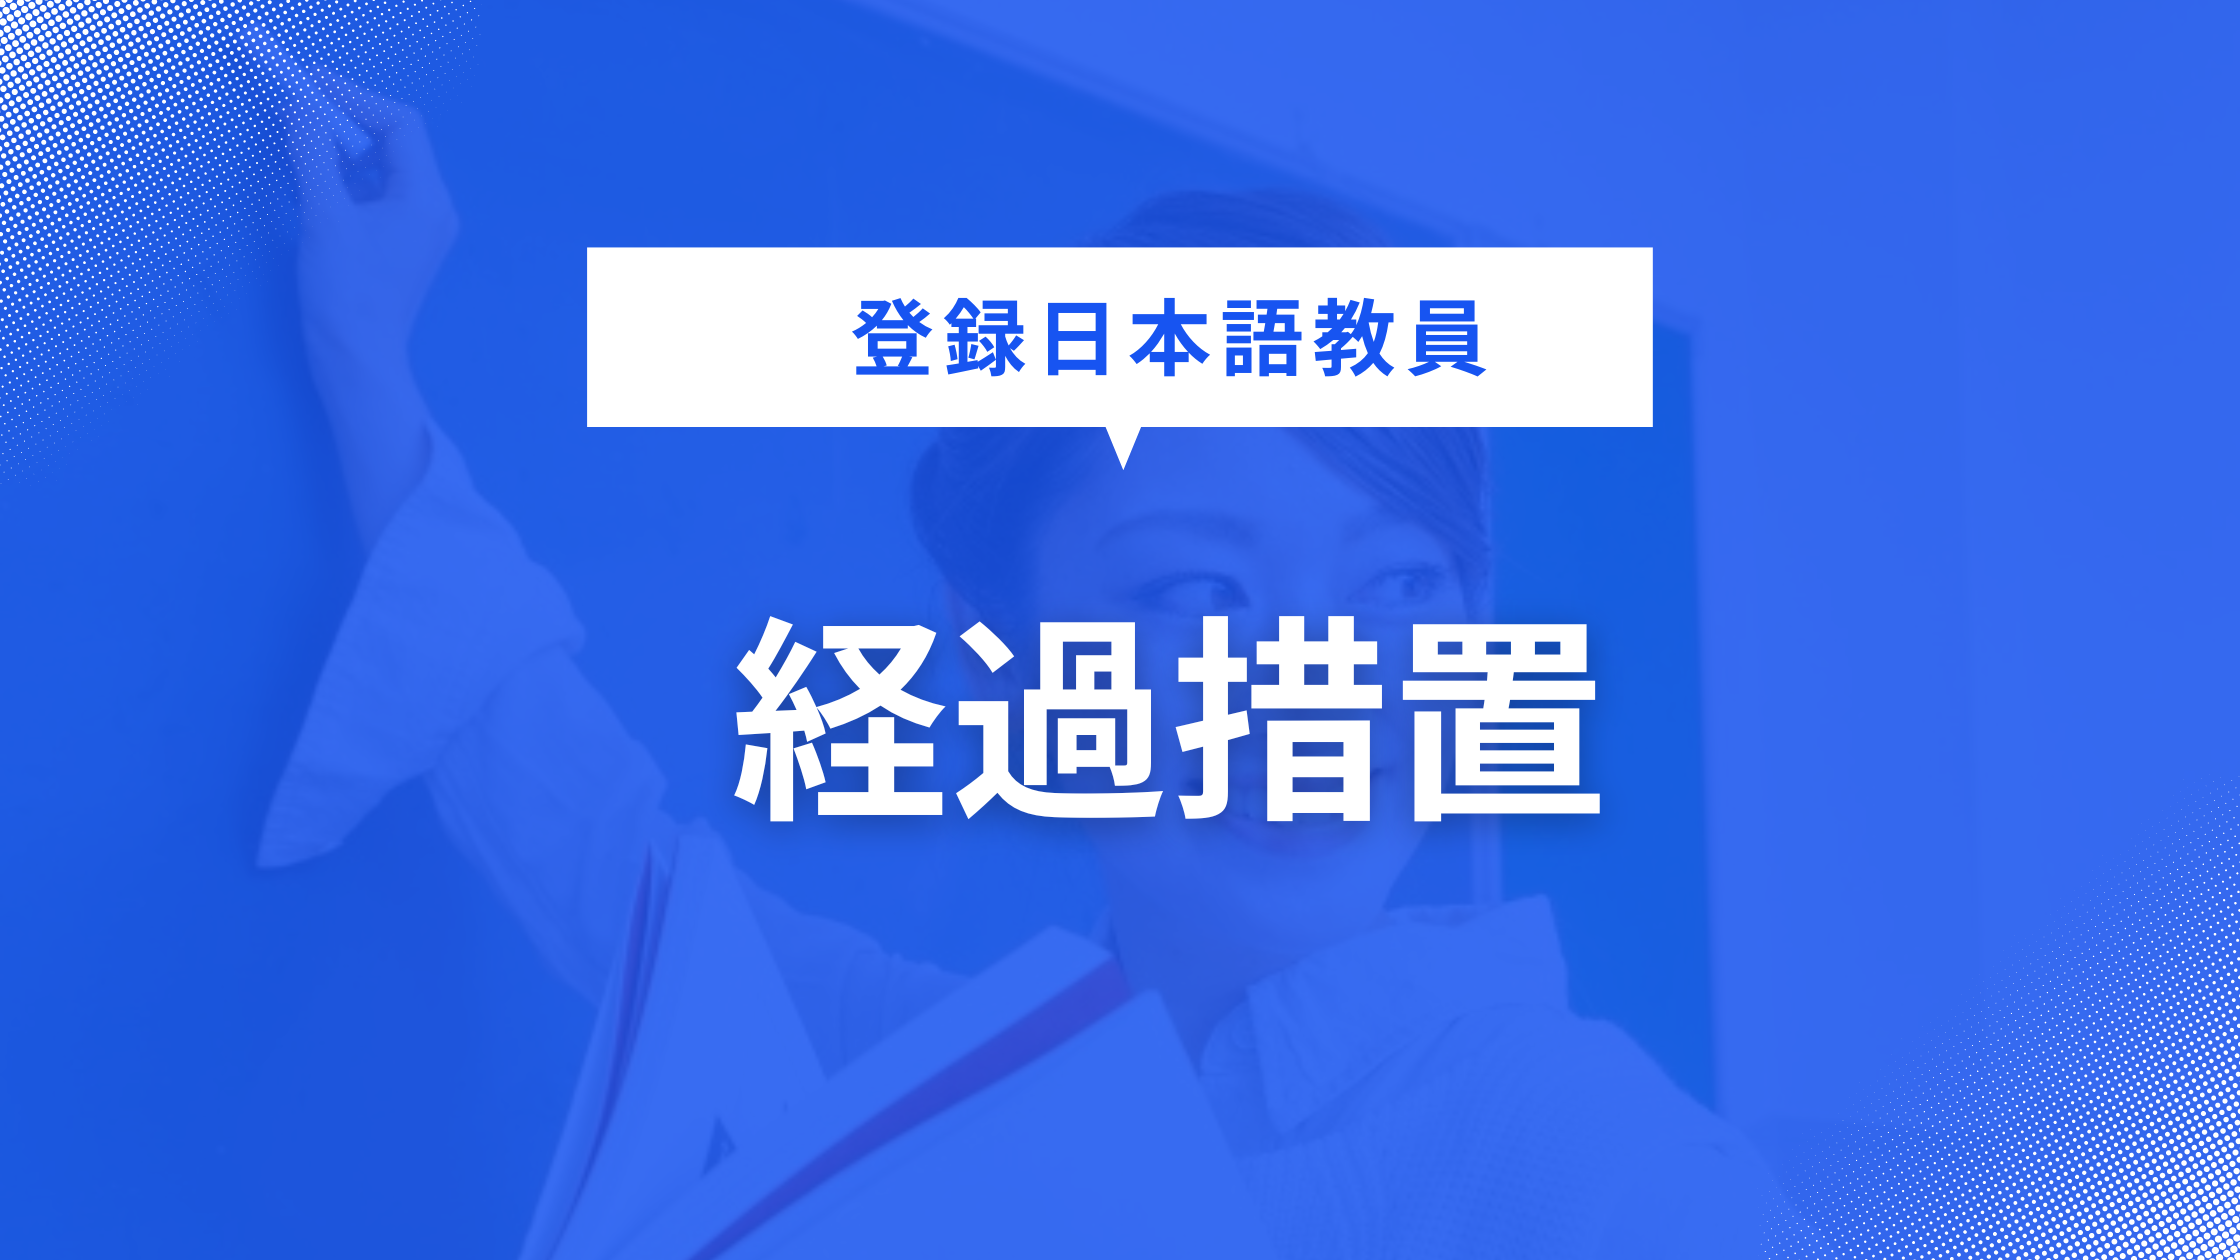 「登録日本語教員の登録申請の手引き」が公開される